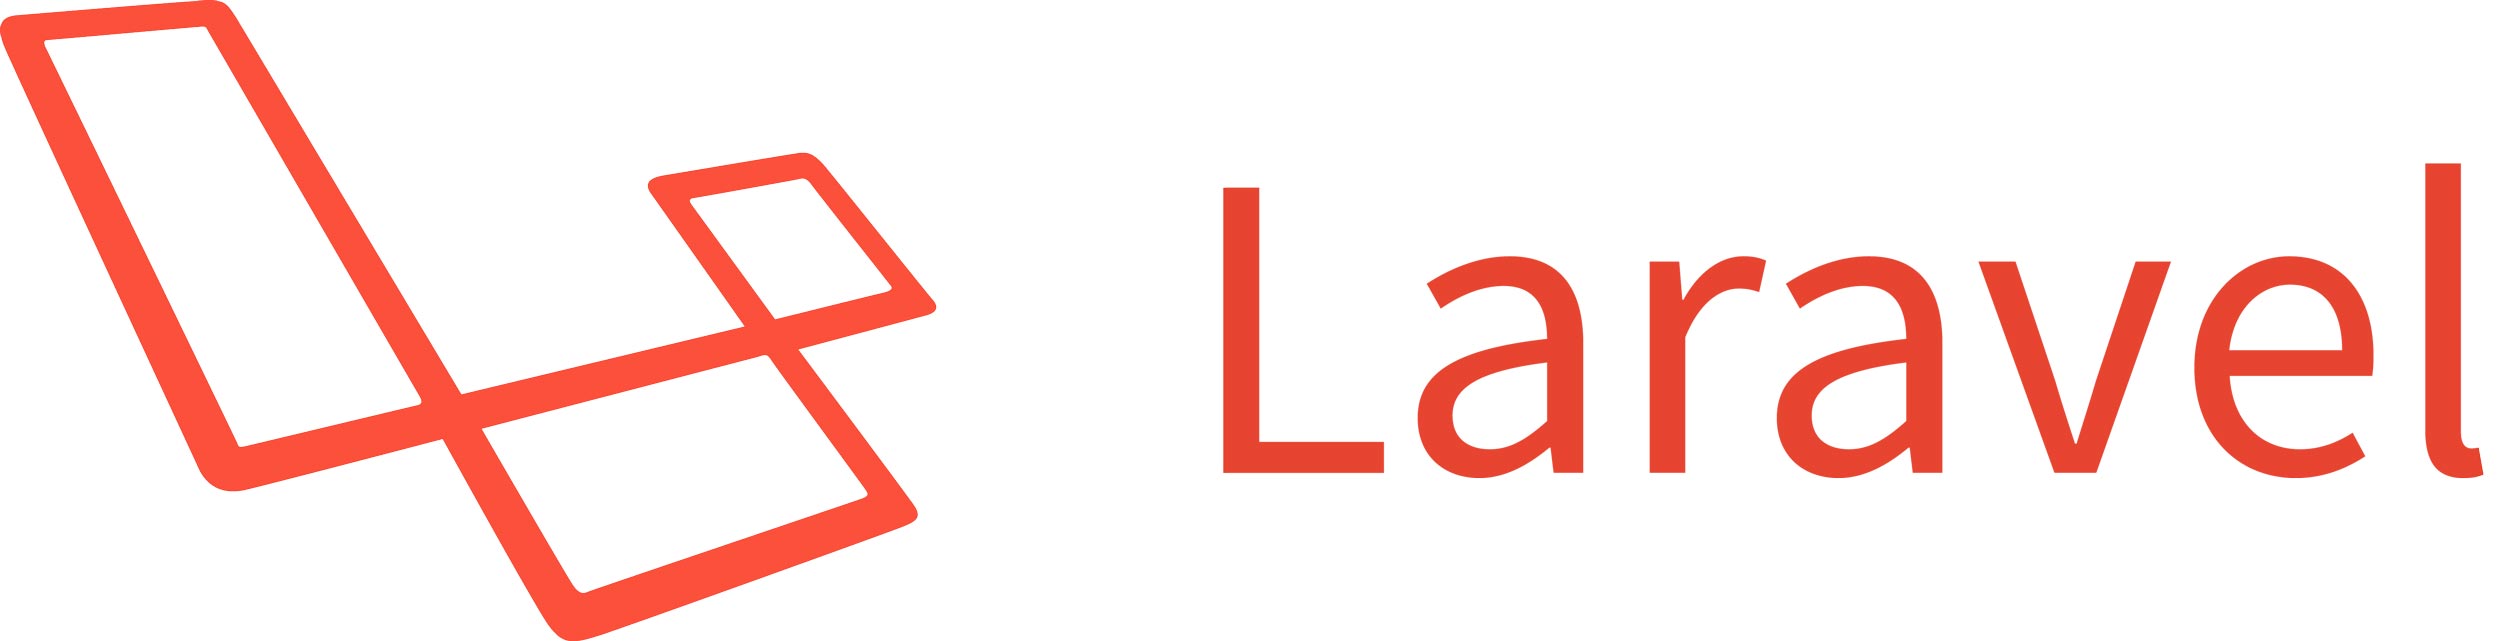 Logo Laravel : Initiation